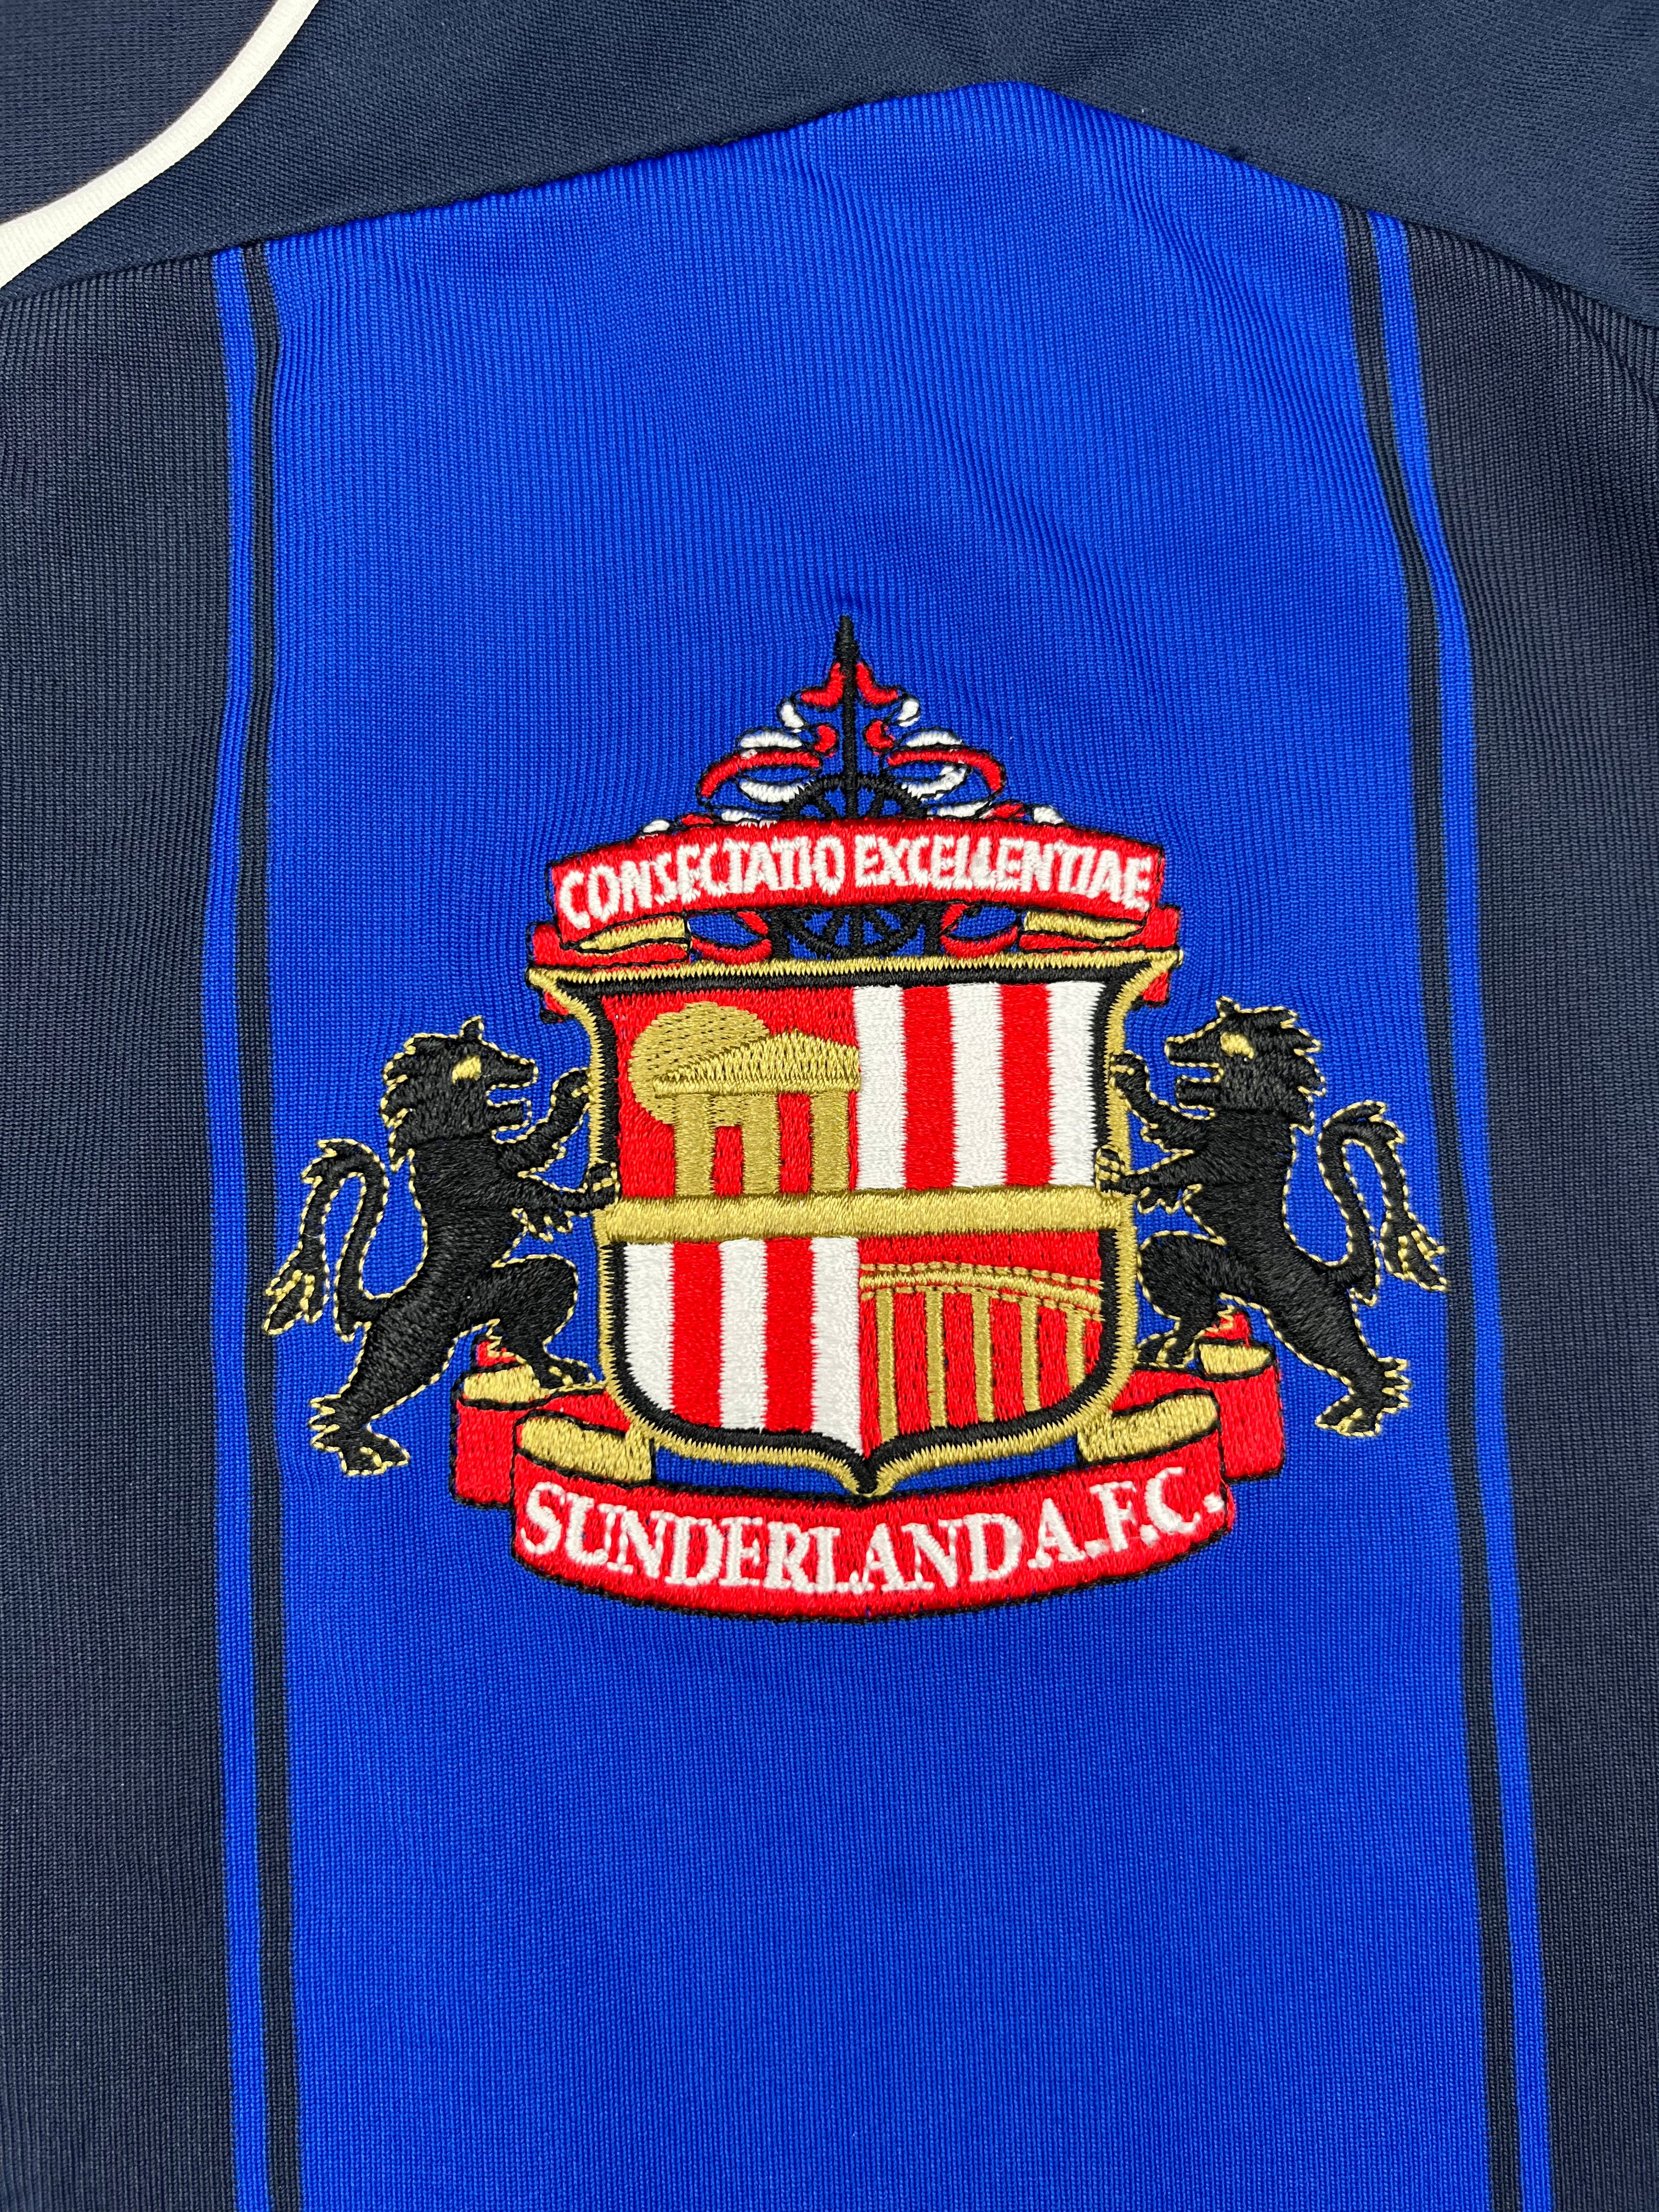 2008/09 Sunderland Away Shirt (XL) 8.5/10